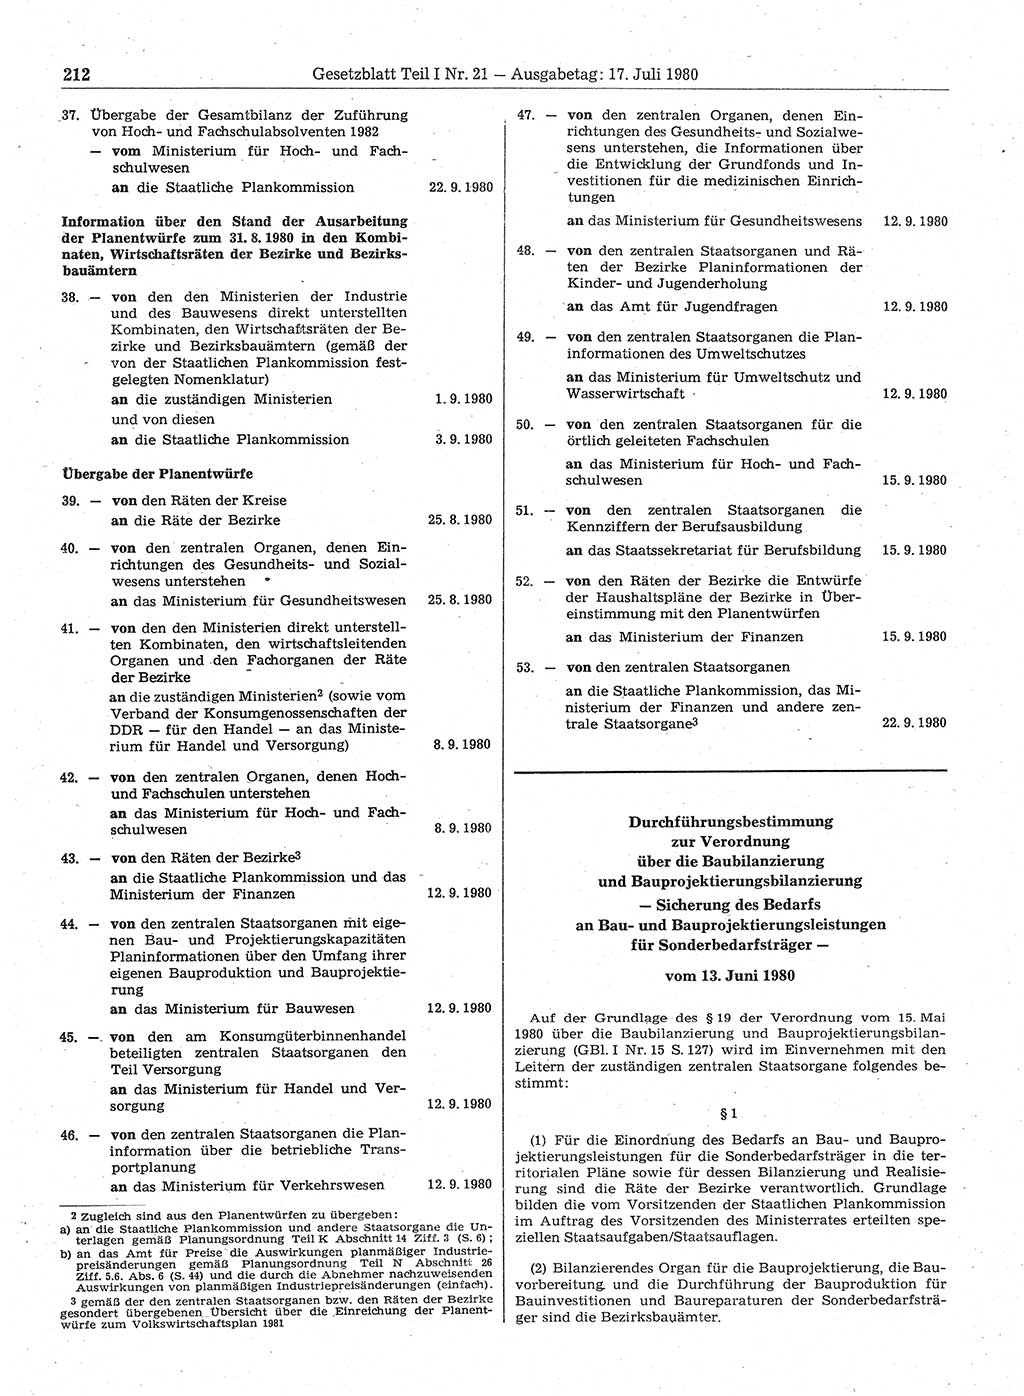 Gesetzblatt (GBl.) der Deutschen Demokratischen Republik (DDR) Teil Ⅰ 1980, Seite 212 (GBl. DDR Ⅰ 1980, S. 212)